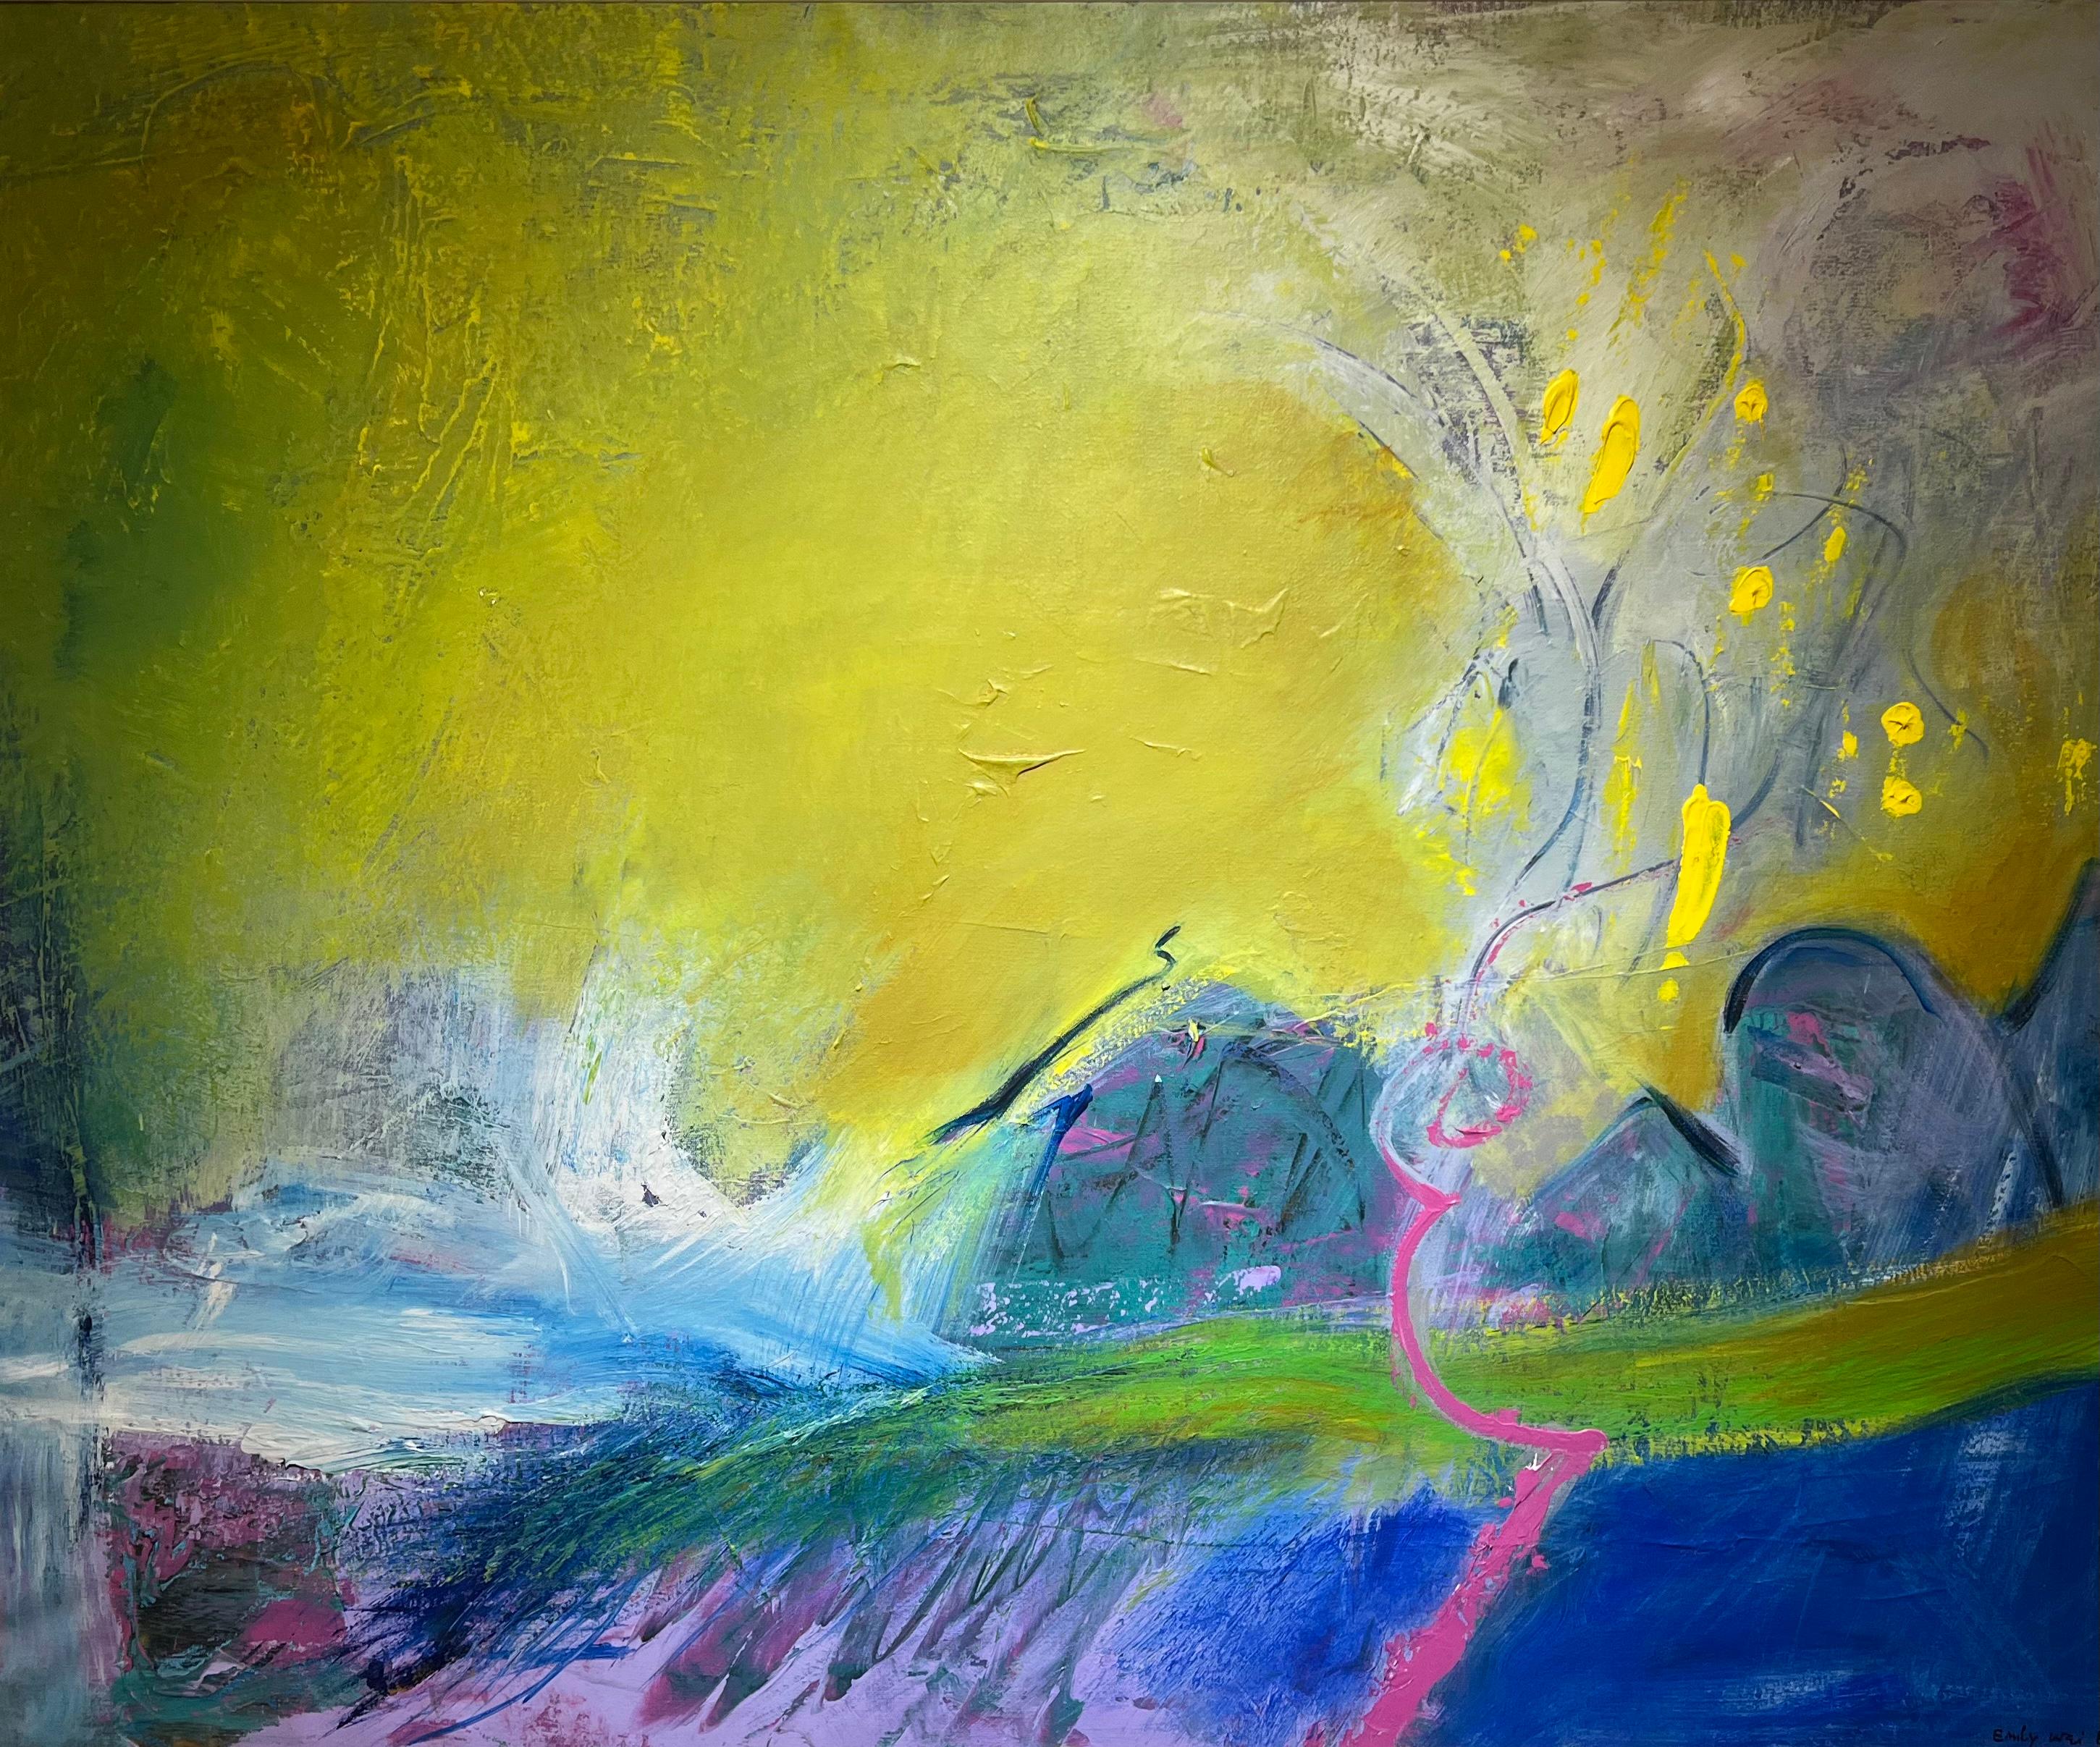 Ici, nous avons eu la chance de proposer une magnifique peinture abstraite d'Emily Wei, née en 1927.

La peinture représente une abstraction vibrante et colorée, signée et datée de 1988.  Le titre est 